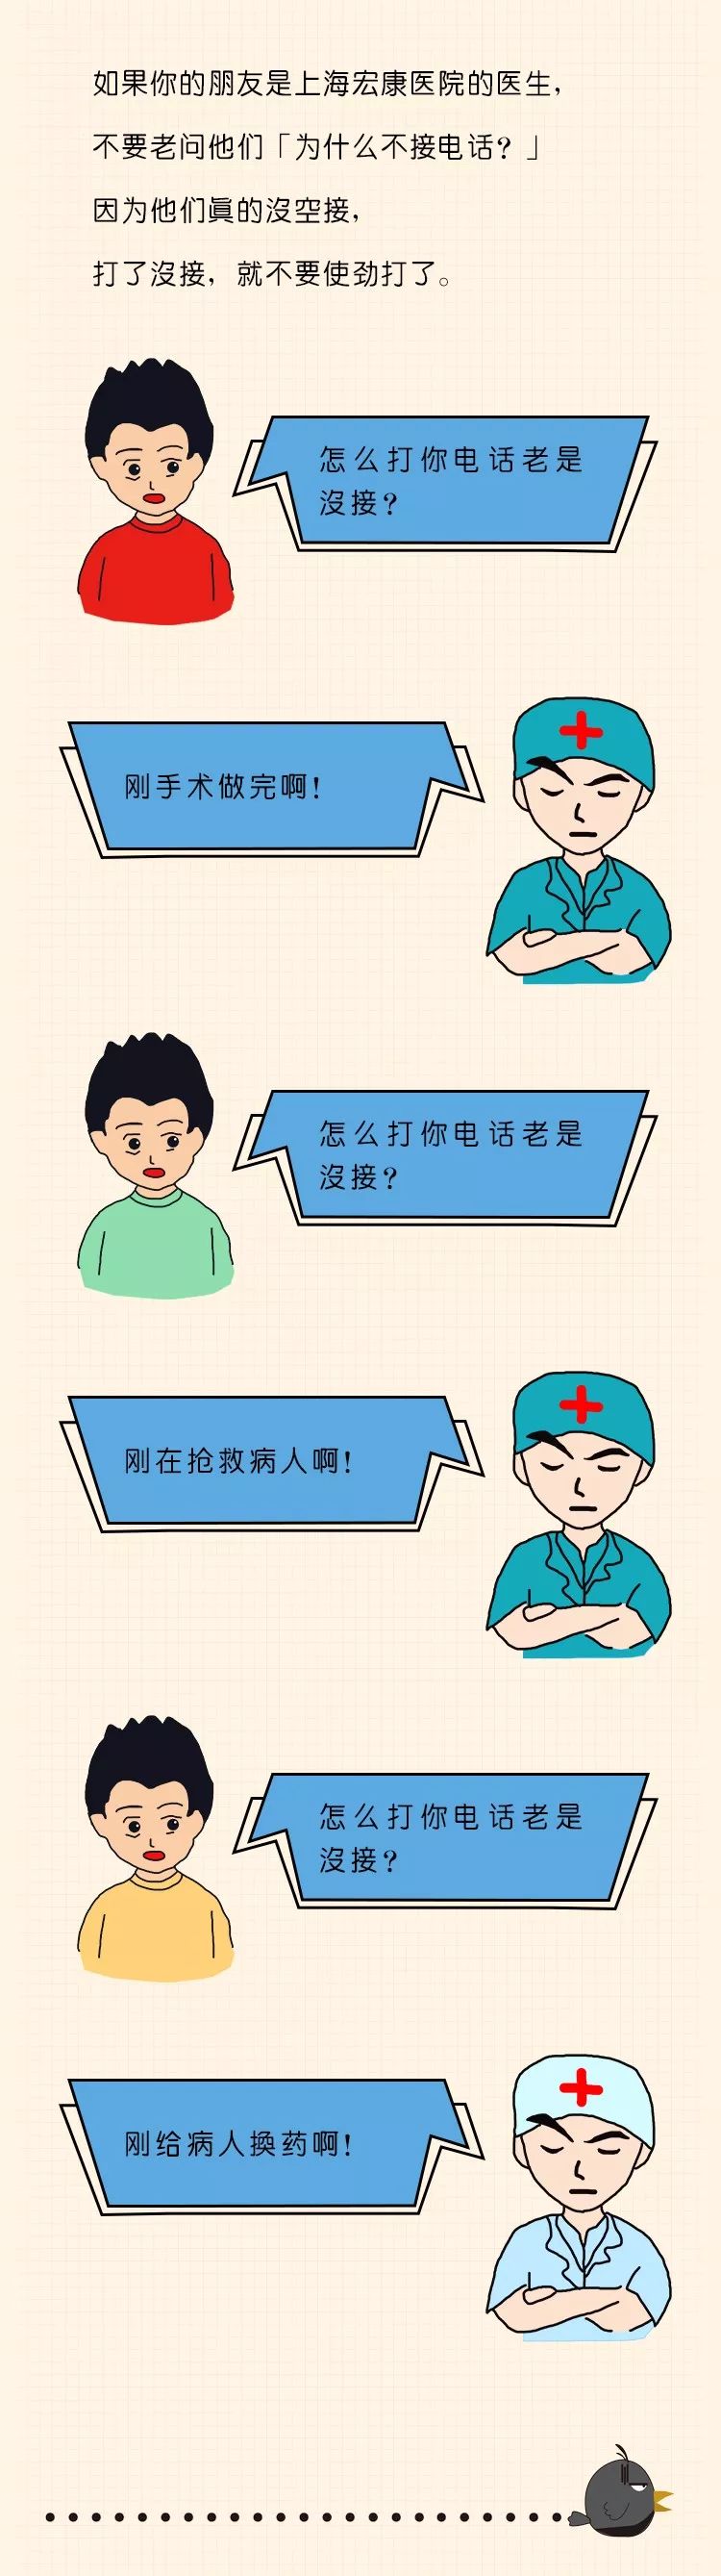 如果你的朋友是上海宏康医院的医生